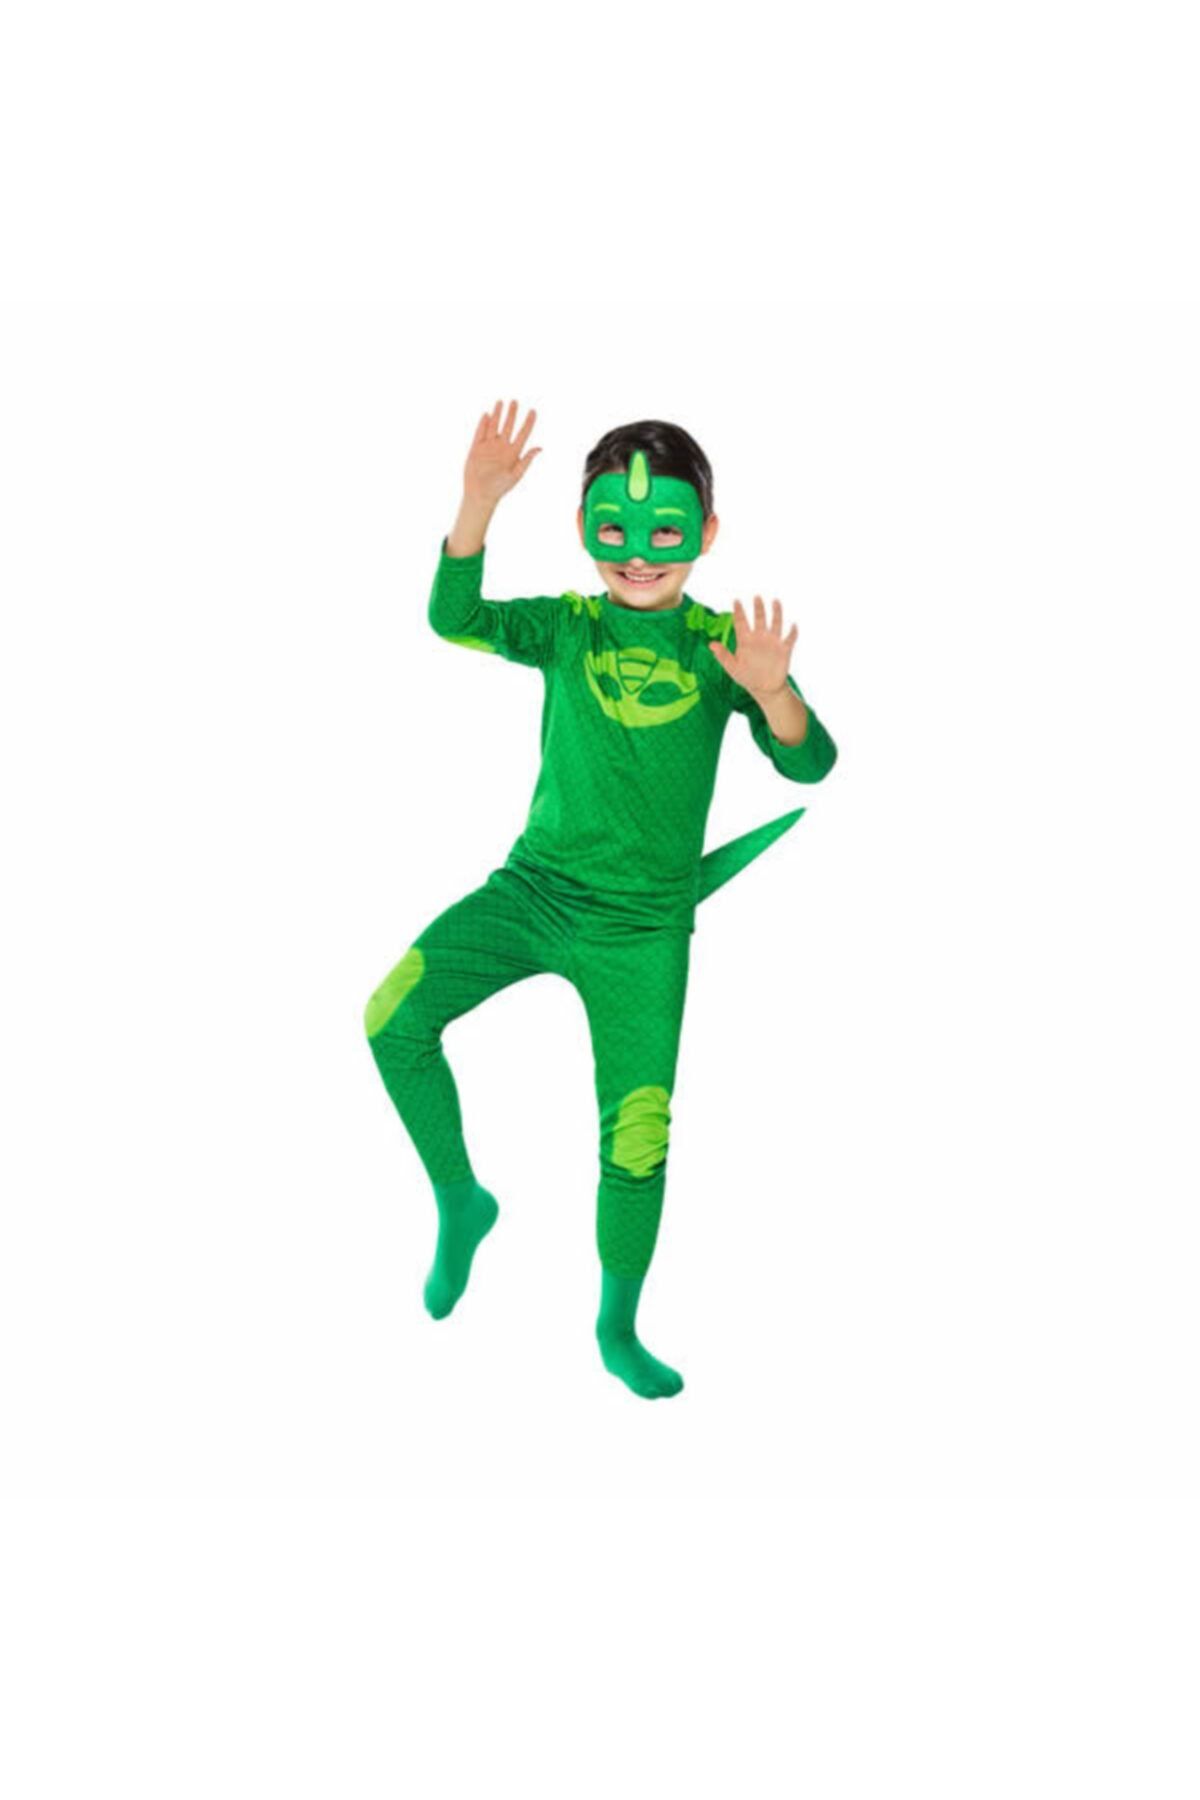 Pj Masks Pj Maskeliler Gekko Kertenkele Çocuk Pijamaskeliler Pj Mask Yeşil Kostümü